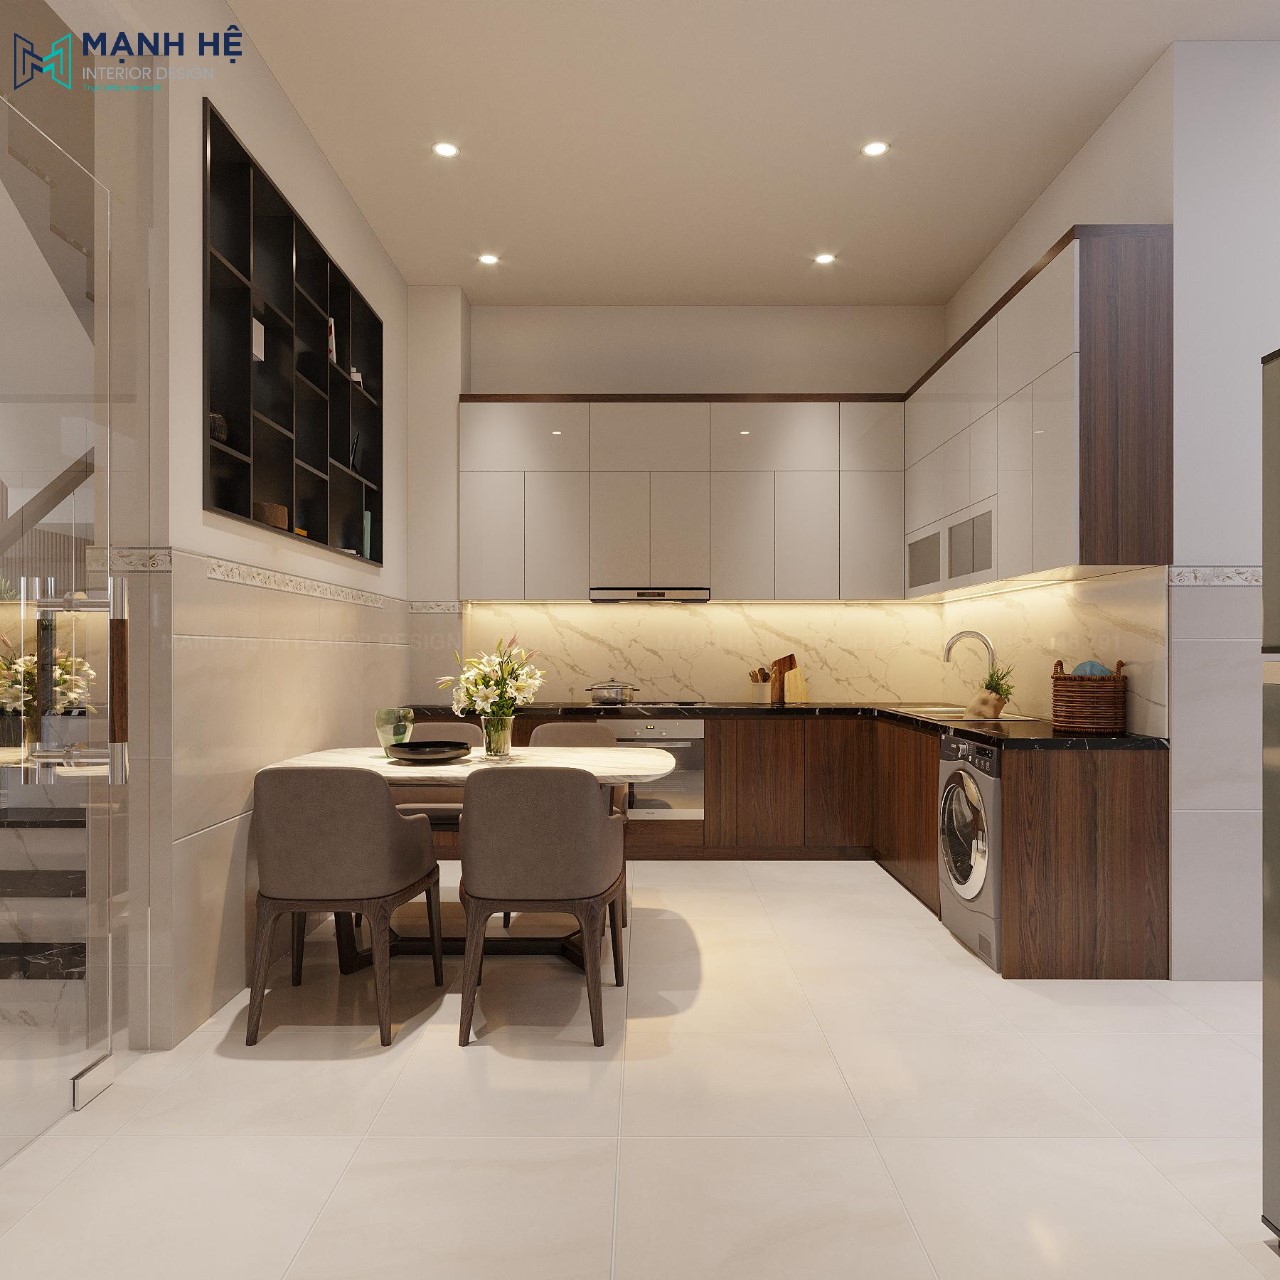 Mẫu 6: Thiết kế phòng bếp đẹp sang trọng, tiện nghi khi tích hợp máy giặt, máy rửa bát chung trong hệ tủ bếp dưới